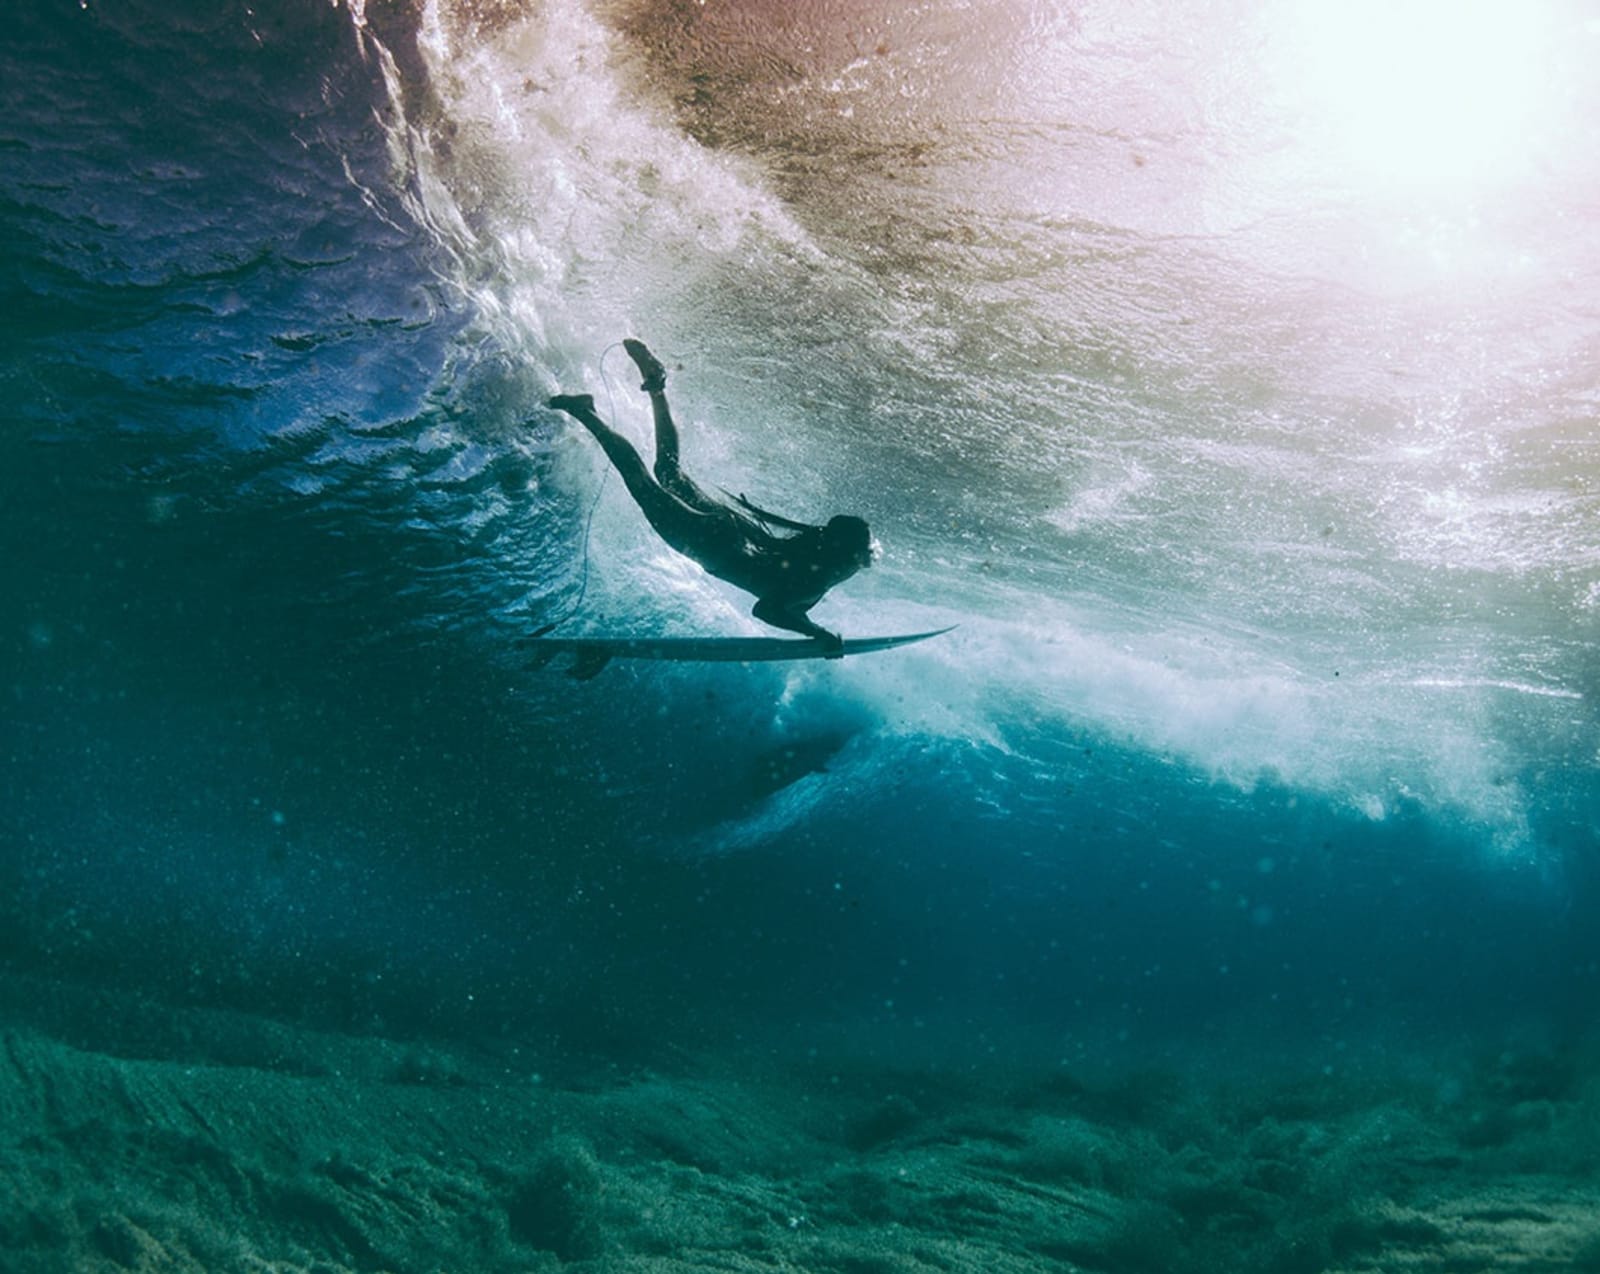 Surfer diving under wave